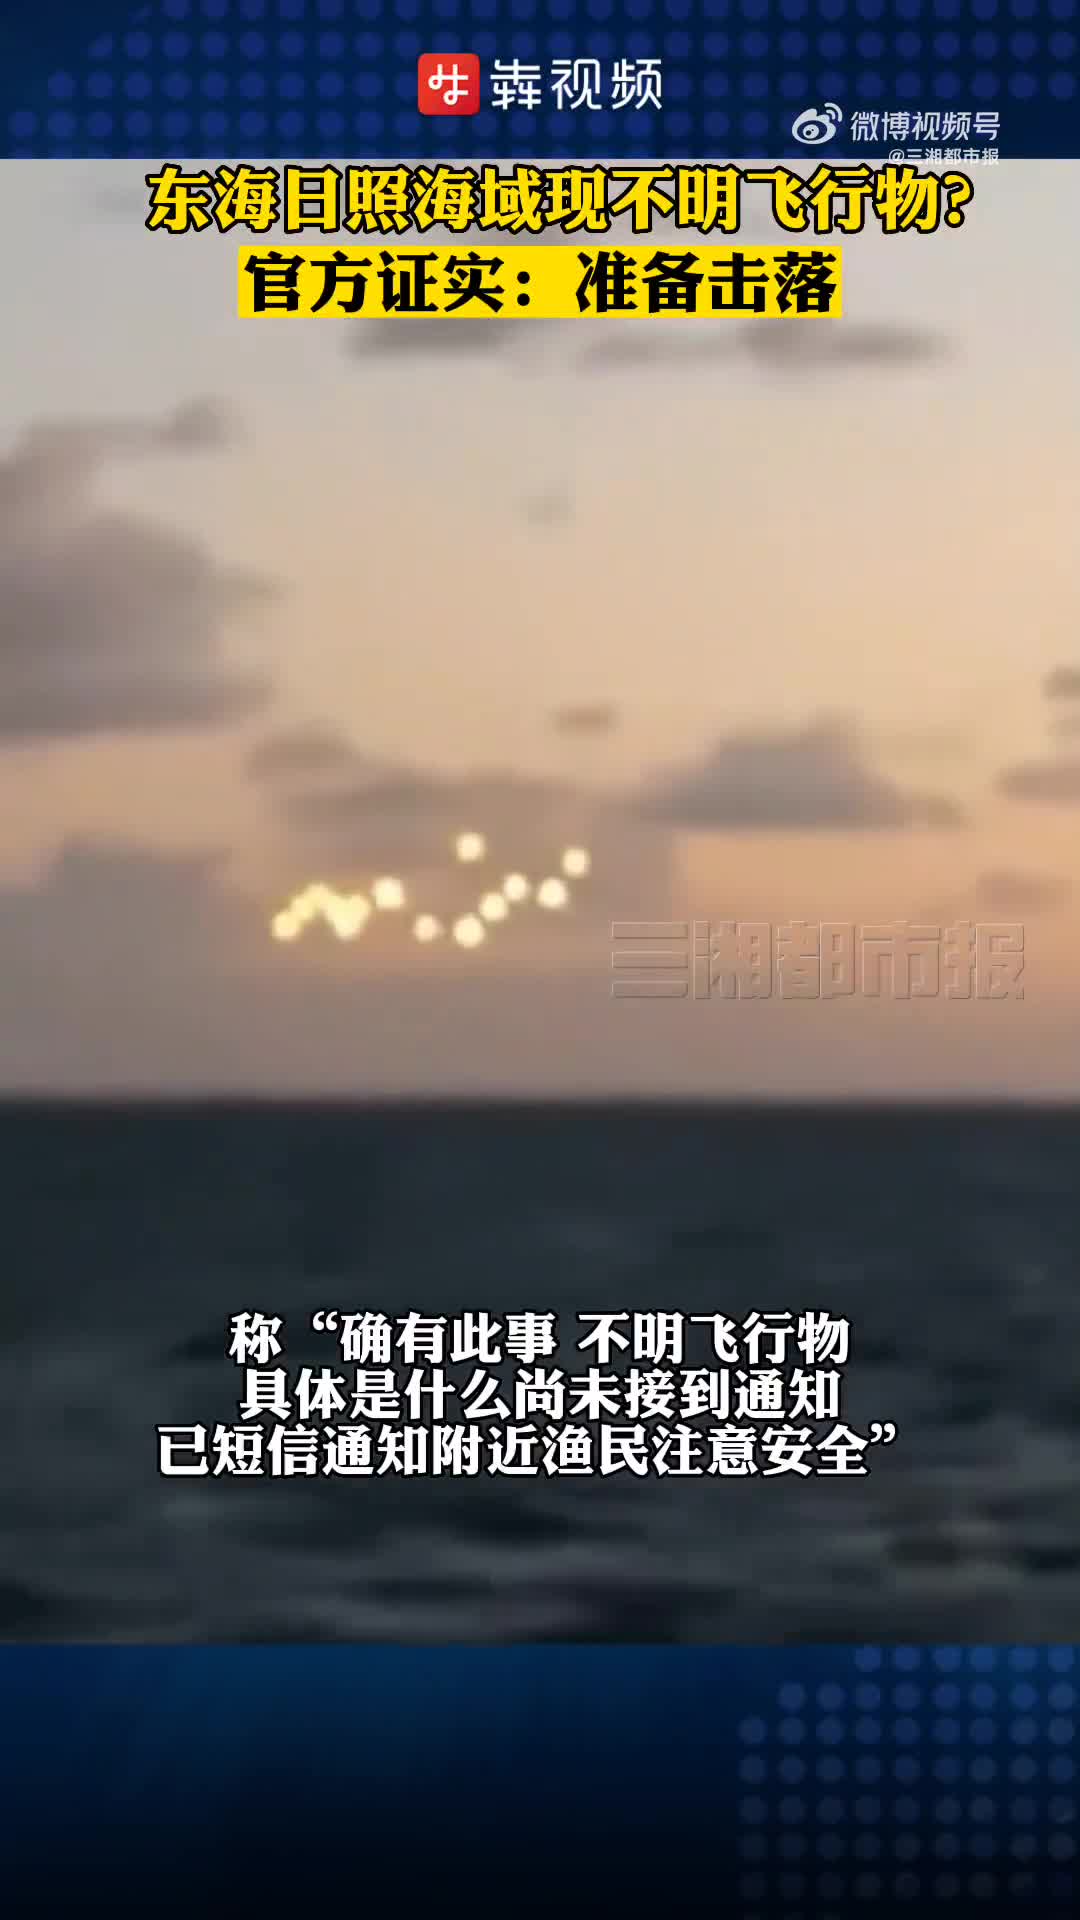 Re: [新聞] 山東海域發現「不明飛行物」中國官方：準